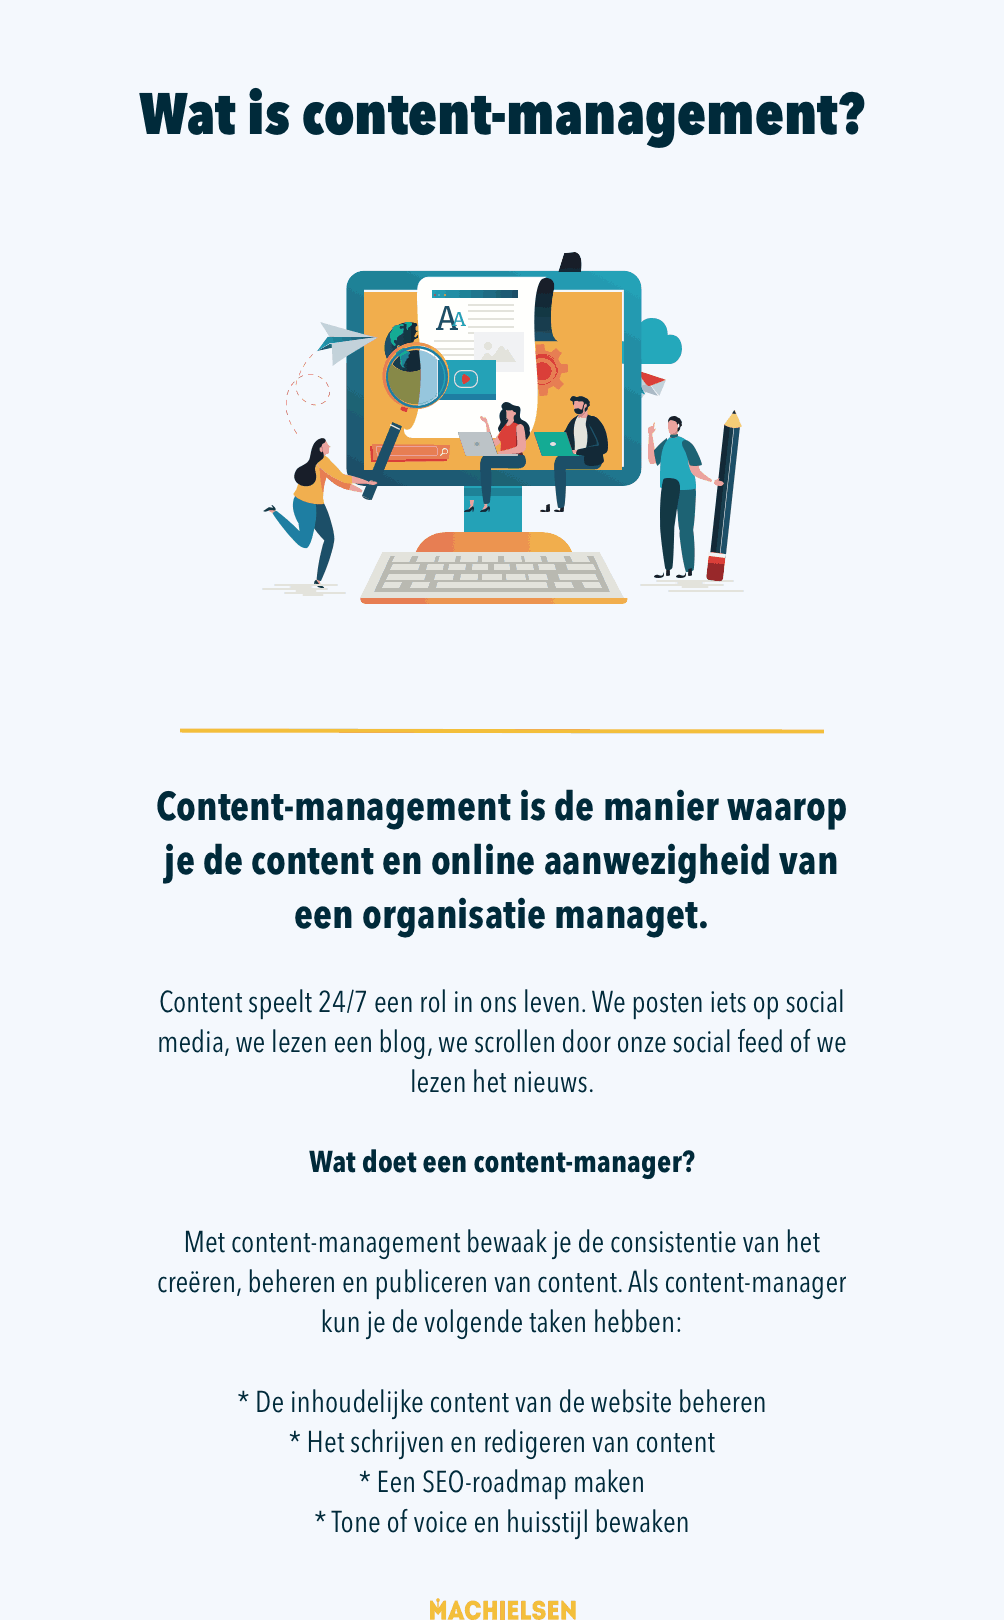 Content management is de manier waarop je de content en online aanwezigheid van een organisatie managet.